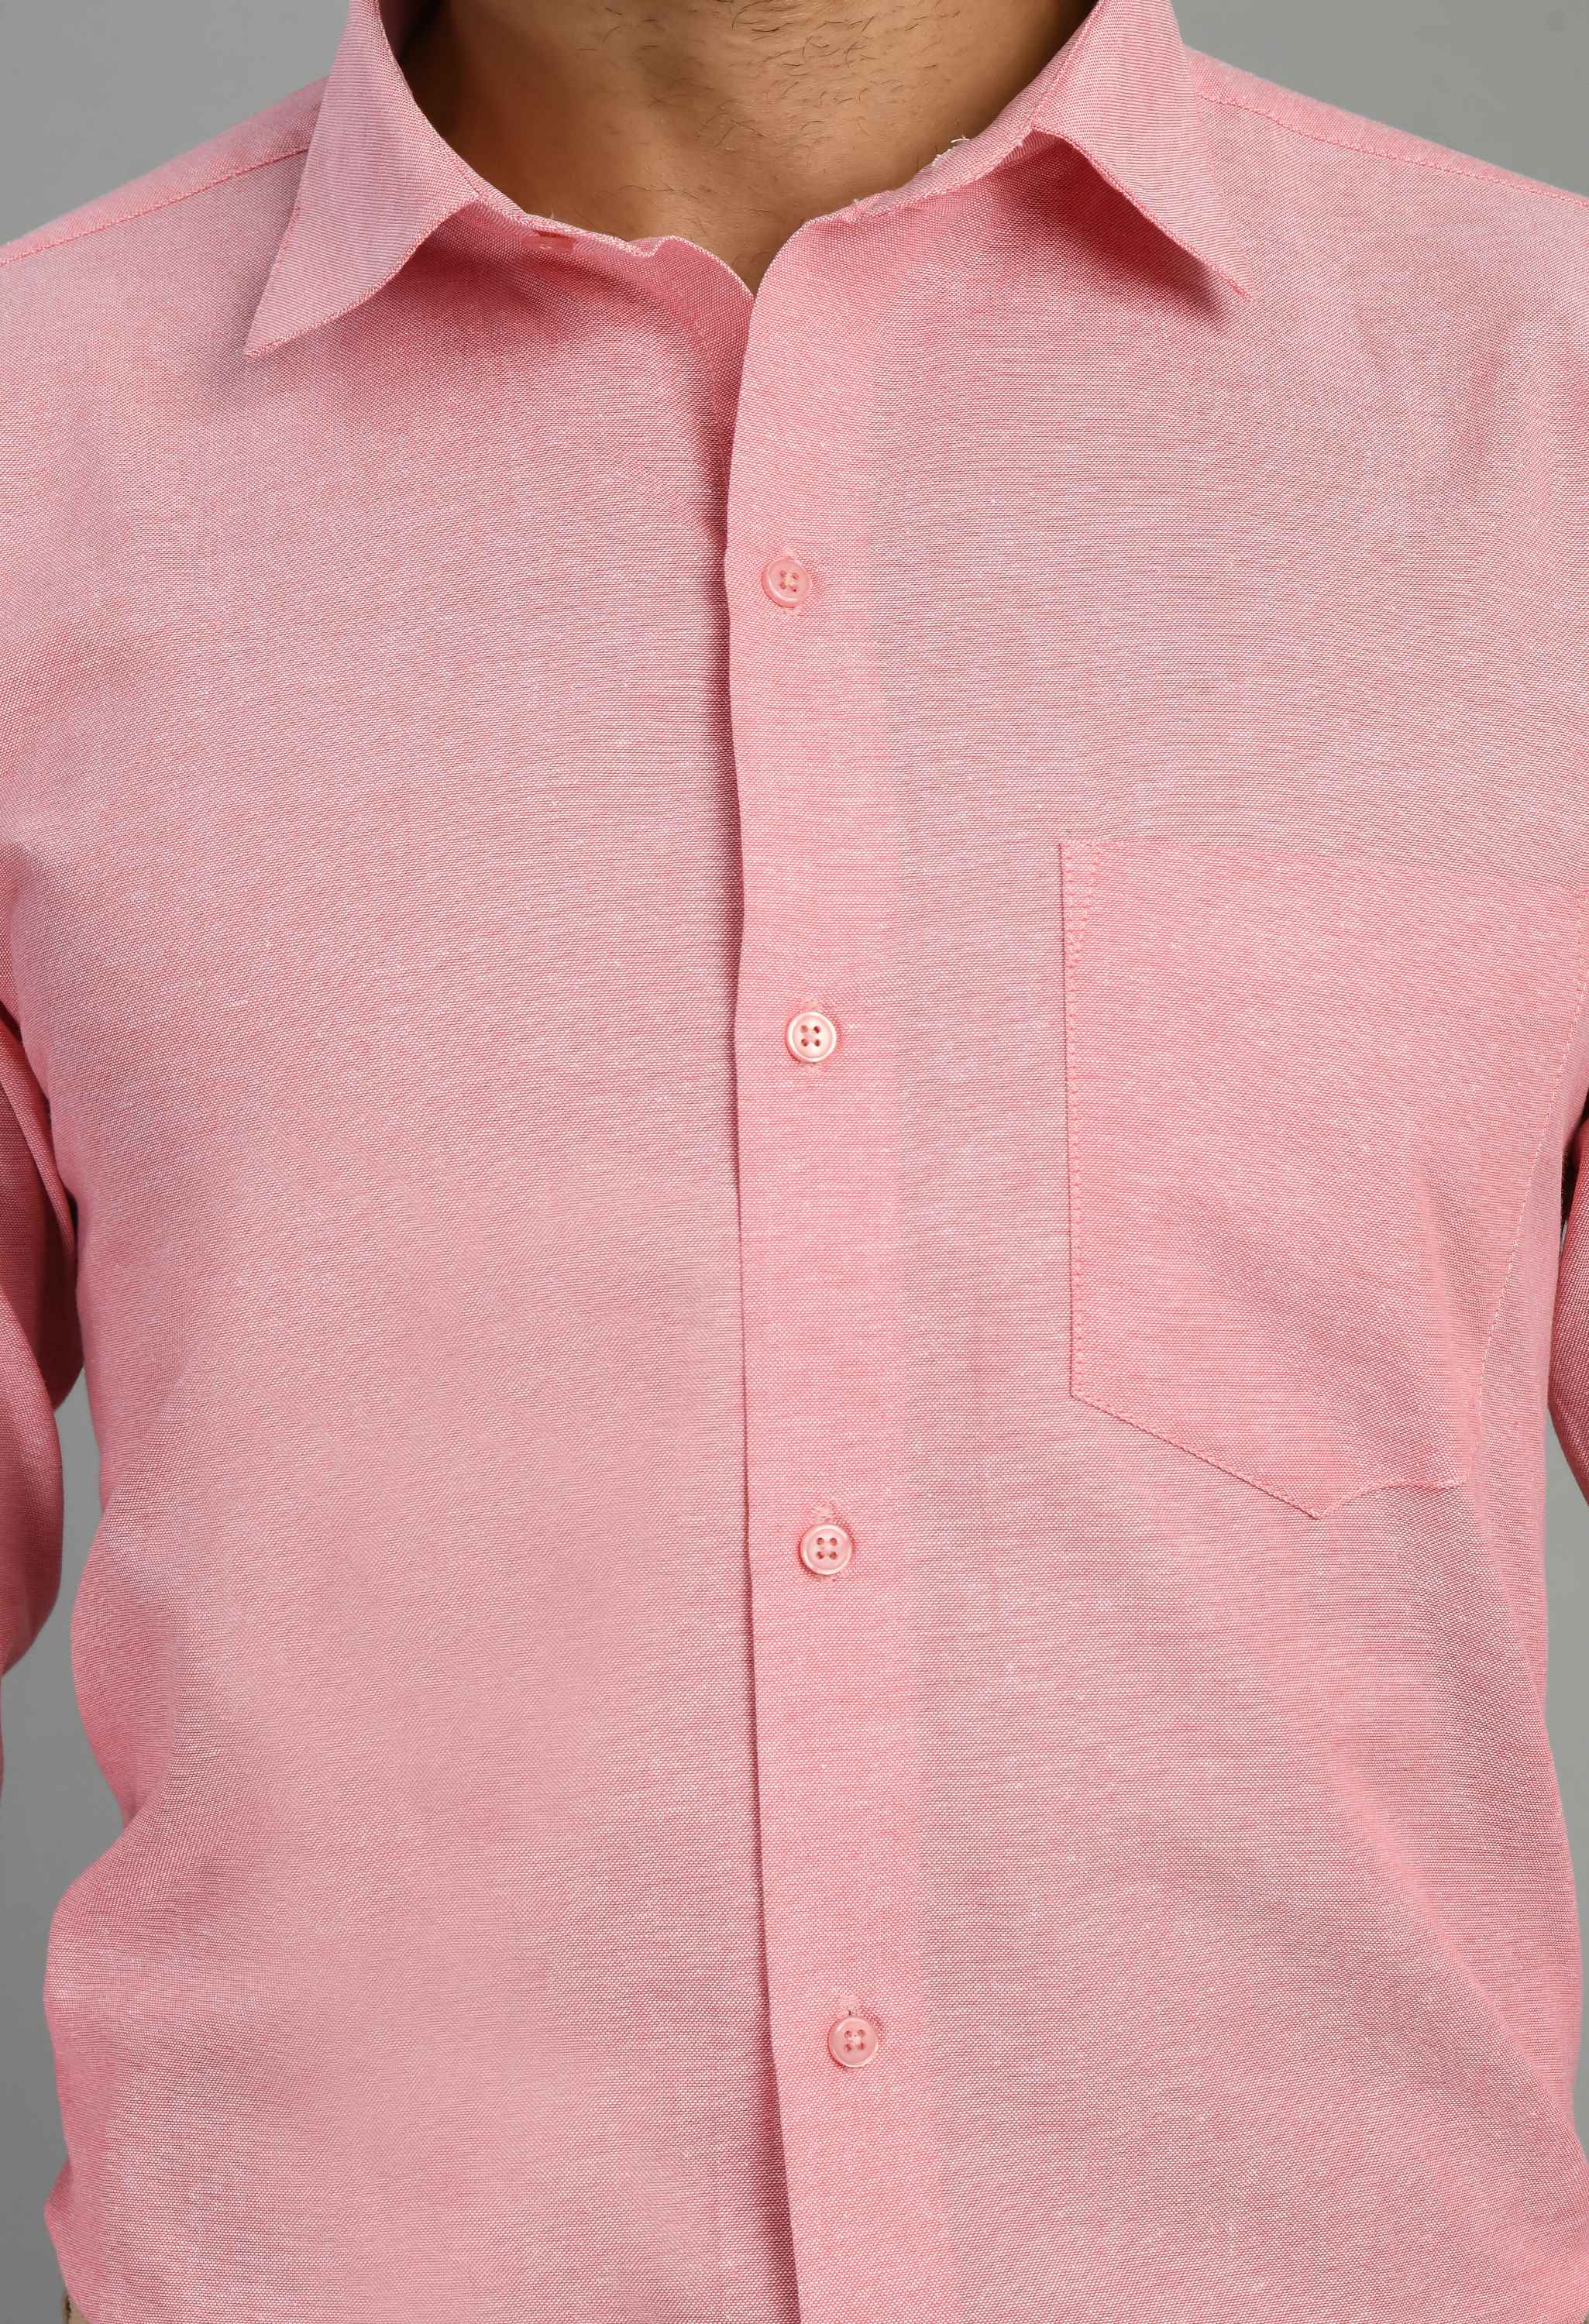 Men's Peach Spread Collor Solid Formal Shirt